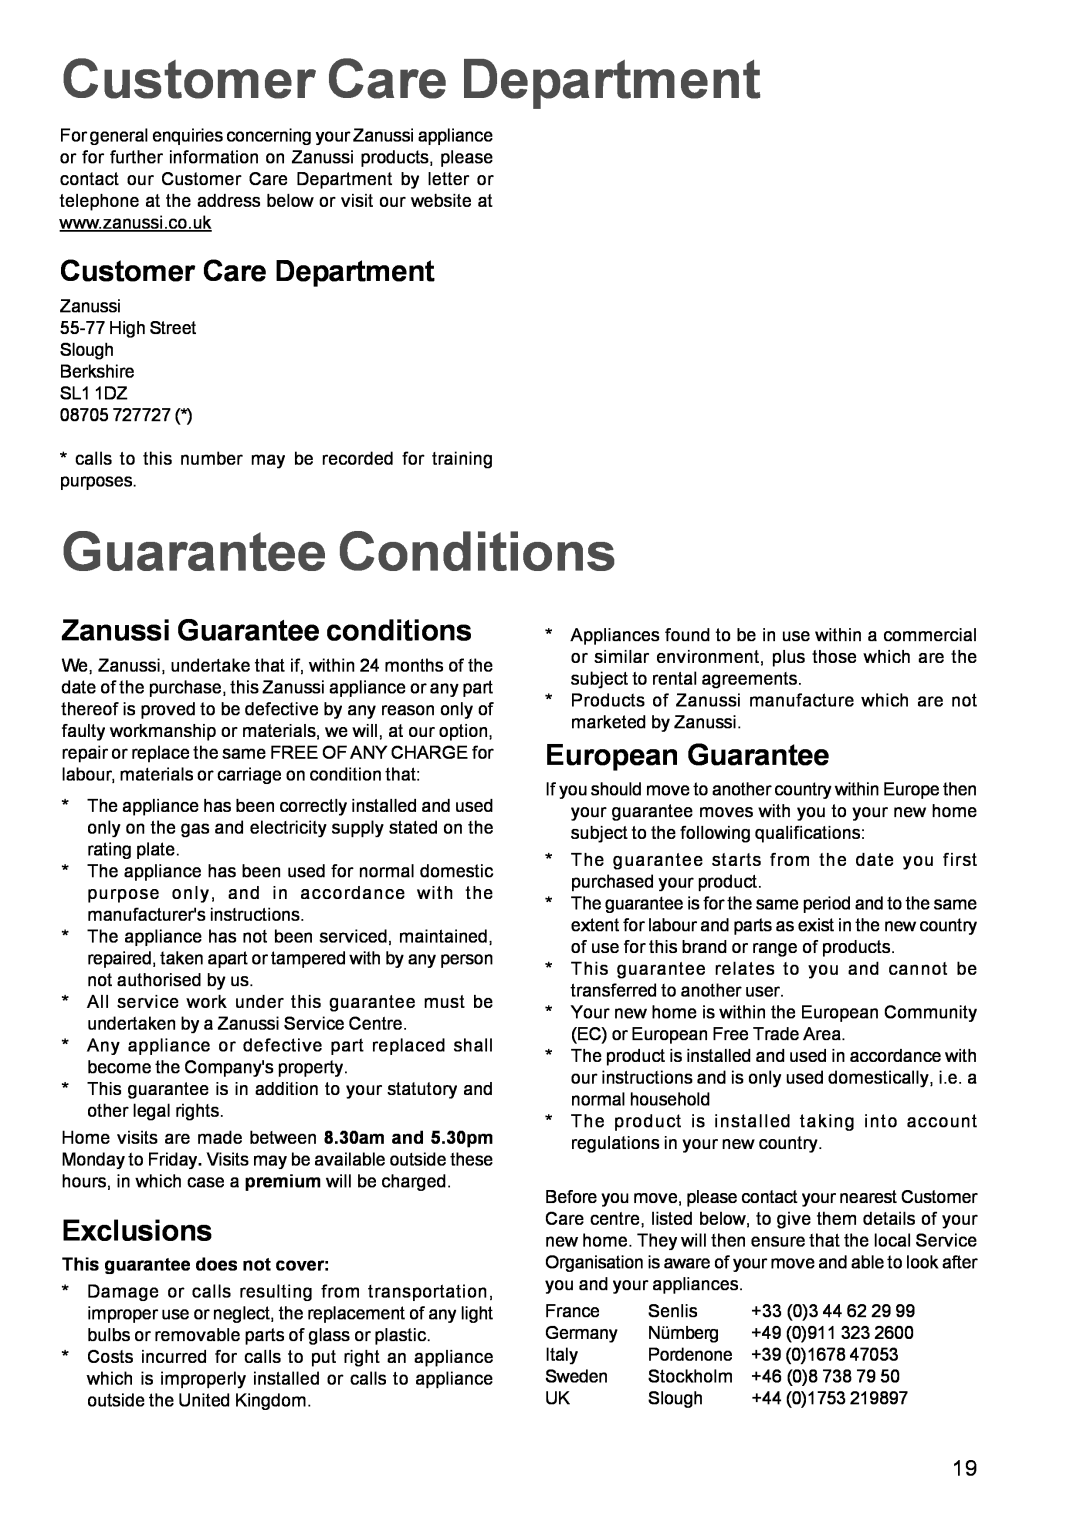 Zanussi ZBM 972 manual Customer Care Department, Guarantee Conditions, Zanussi Guarantee conditions, Exclusions 